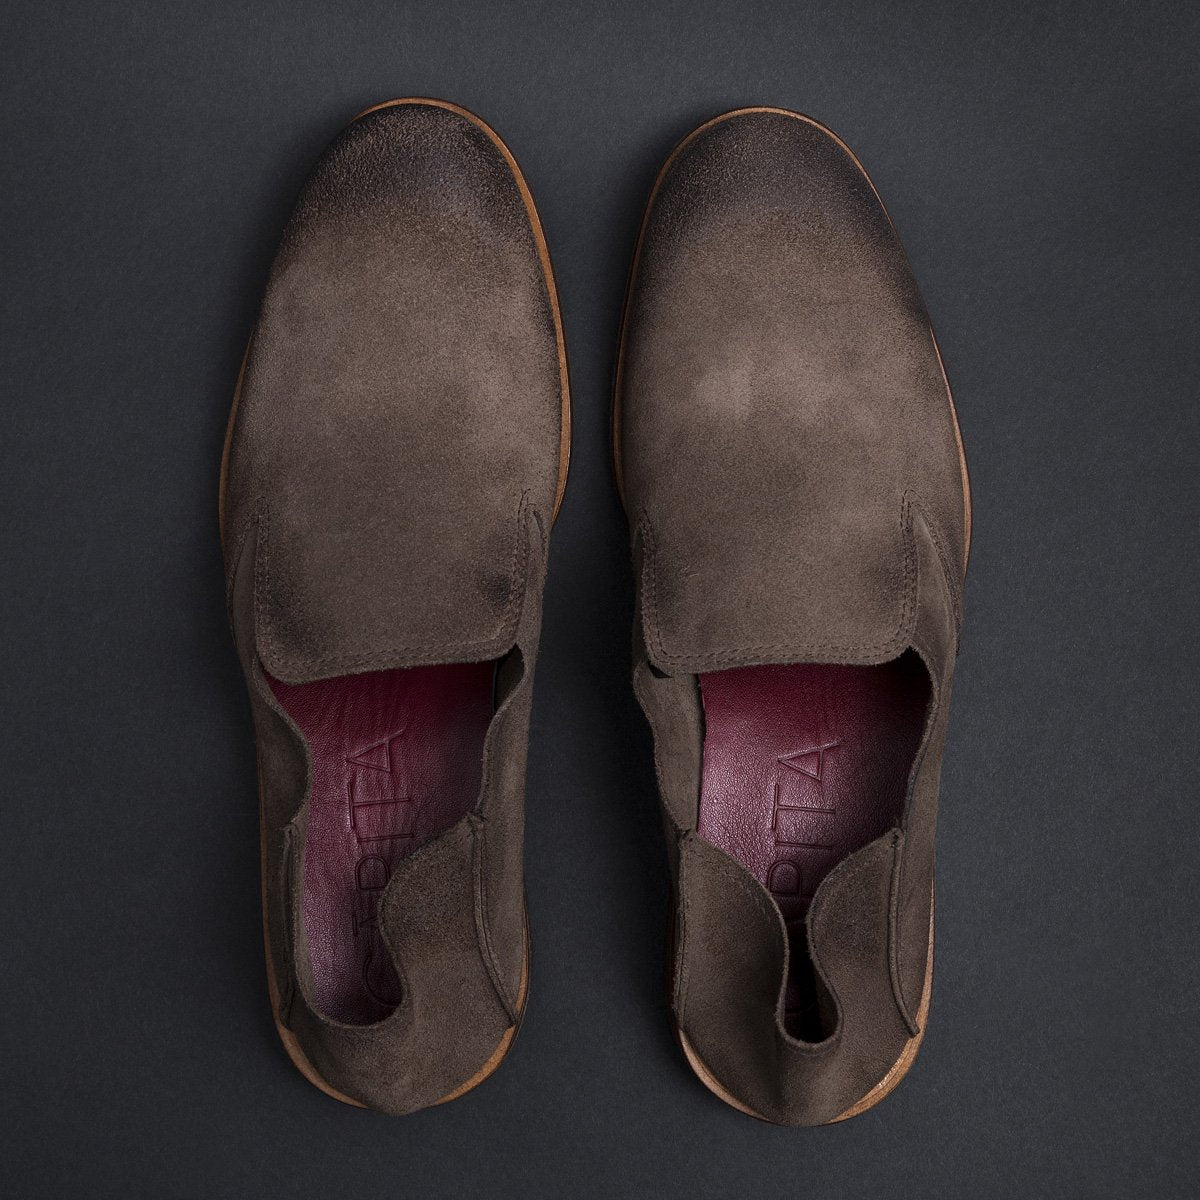 Saxon Vison - Suede Leather Shoes